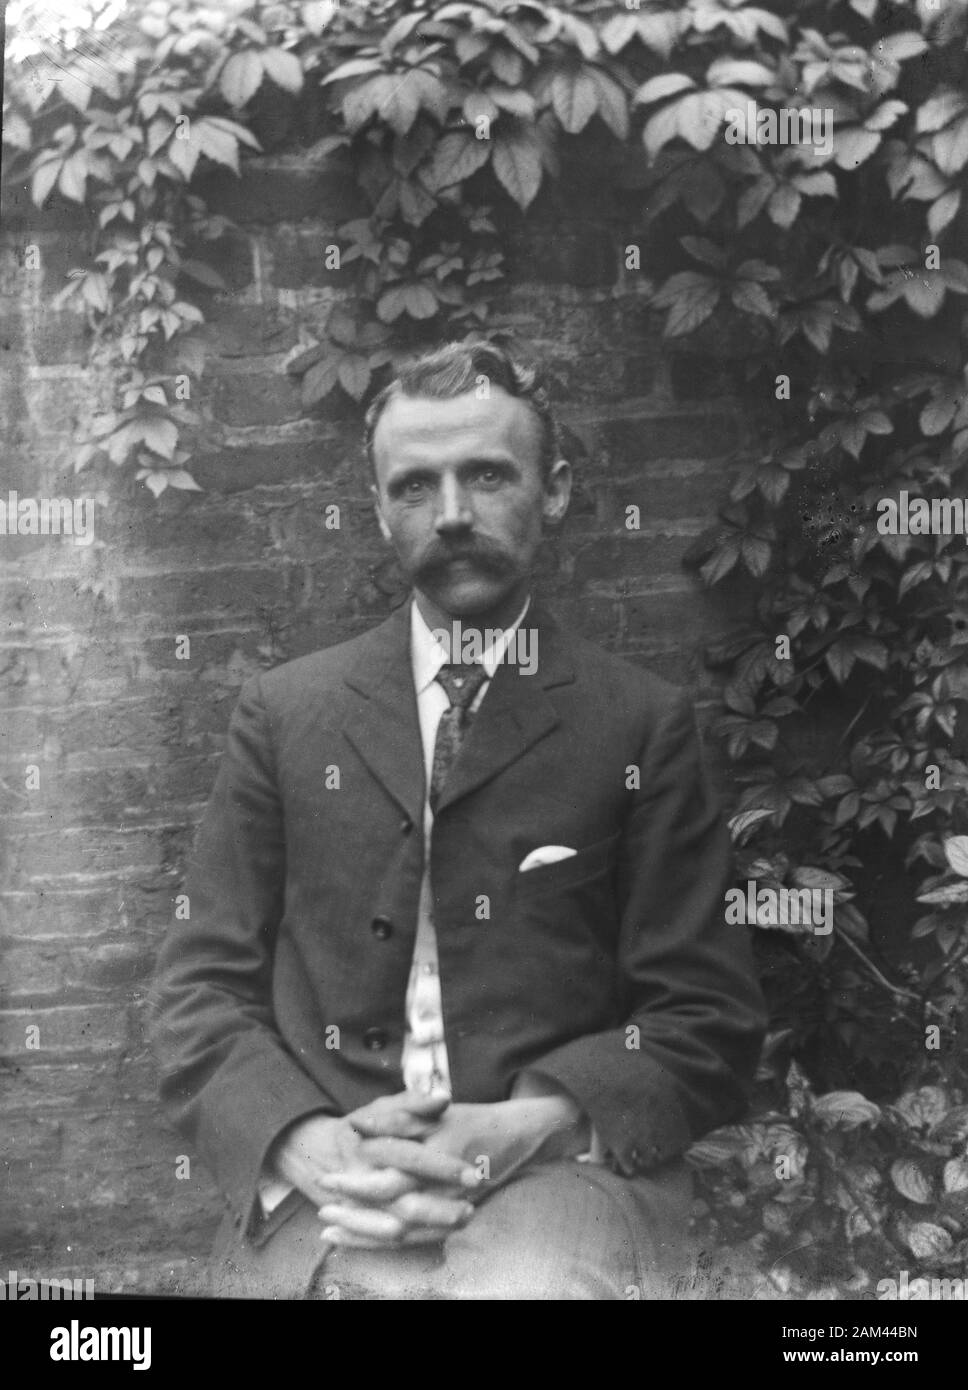 Photo d'archive d'un homme moustachioé vers 1910. Scanné directement à partir de la vitre le négatif. Banque D'Images